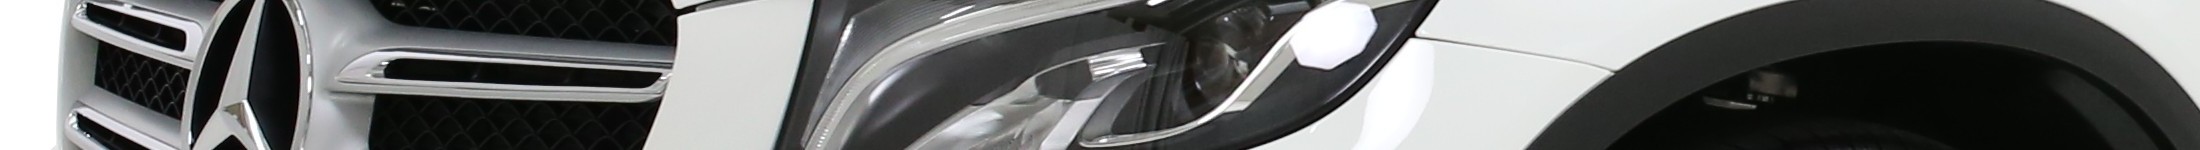 Głowny baner marki Mercedes - detal 